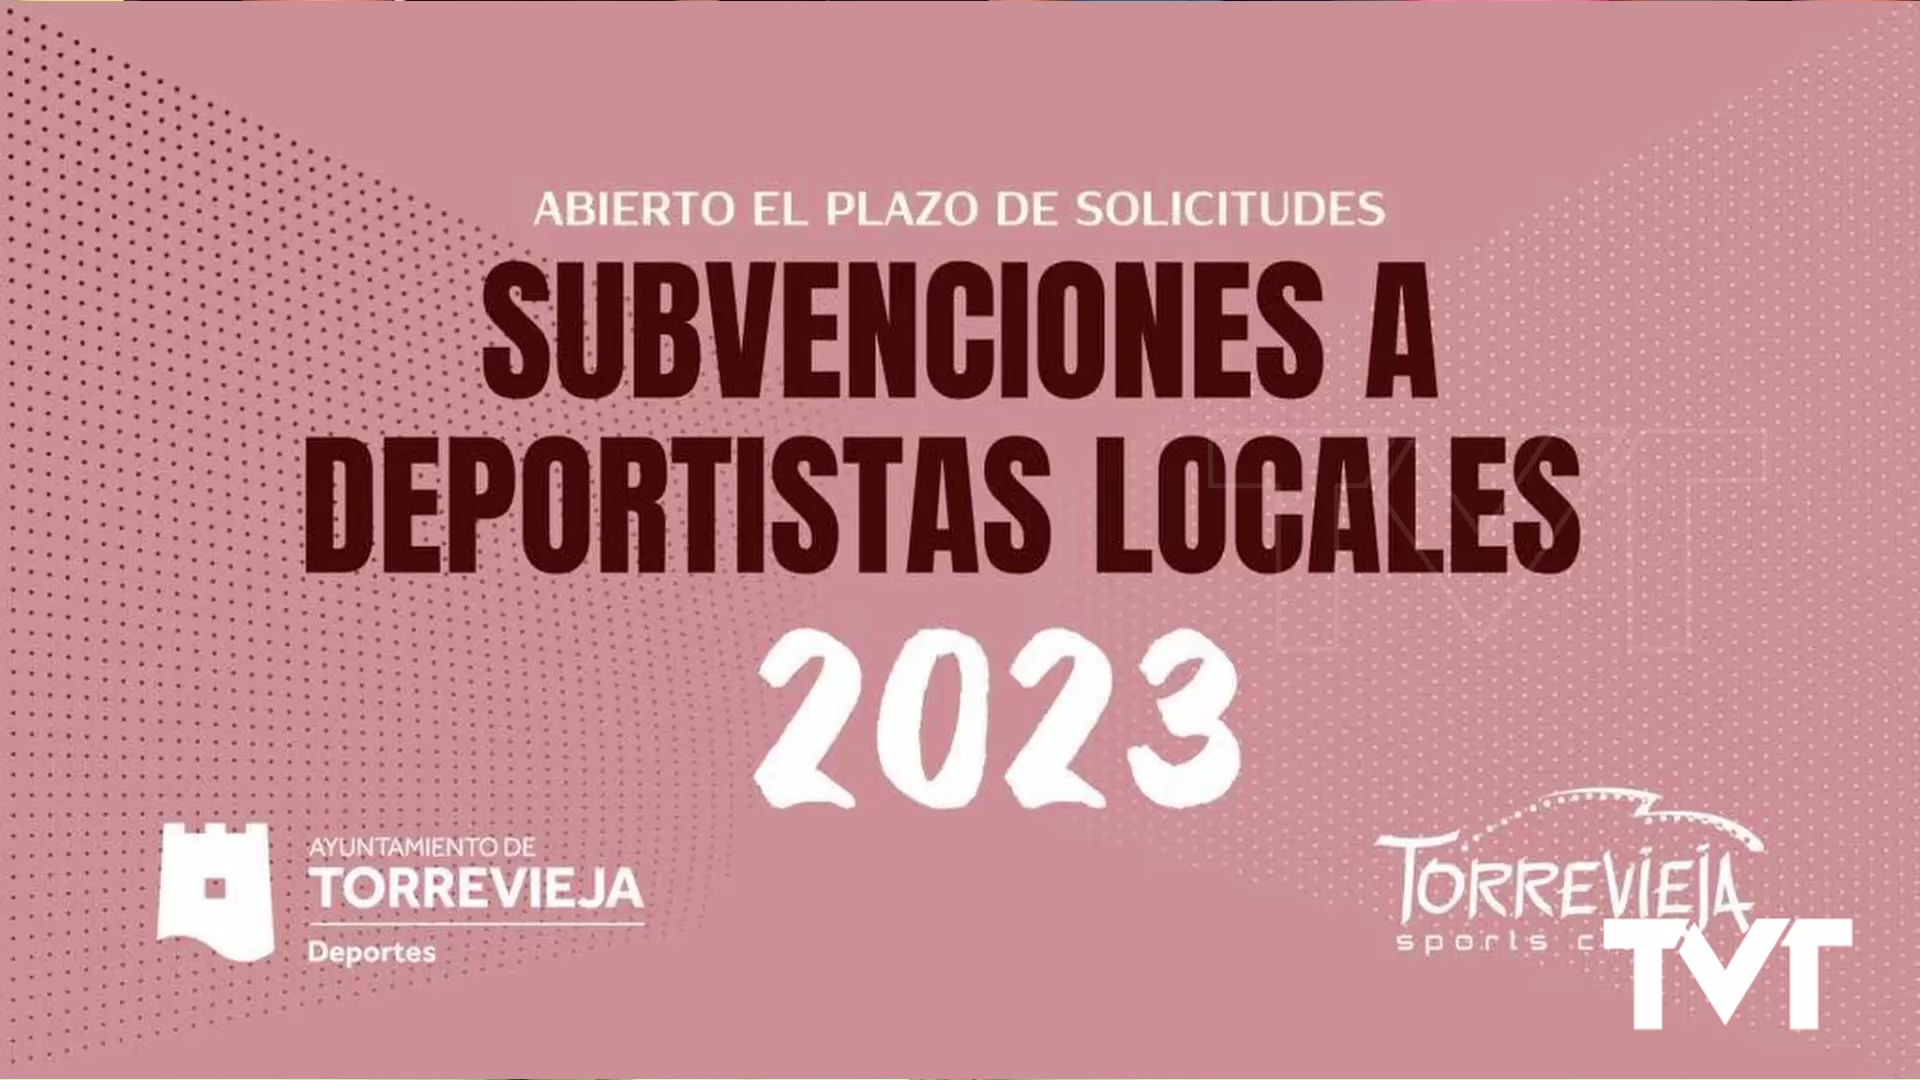 Imagen de Abierto plazo para solicitar subvenciones a deportistas locales 2023 